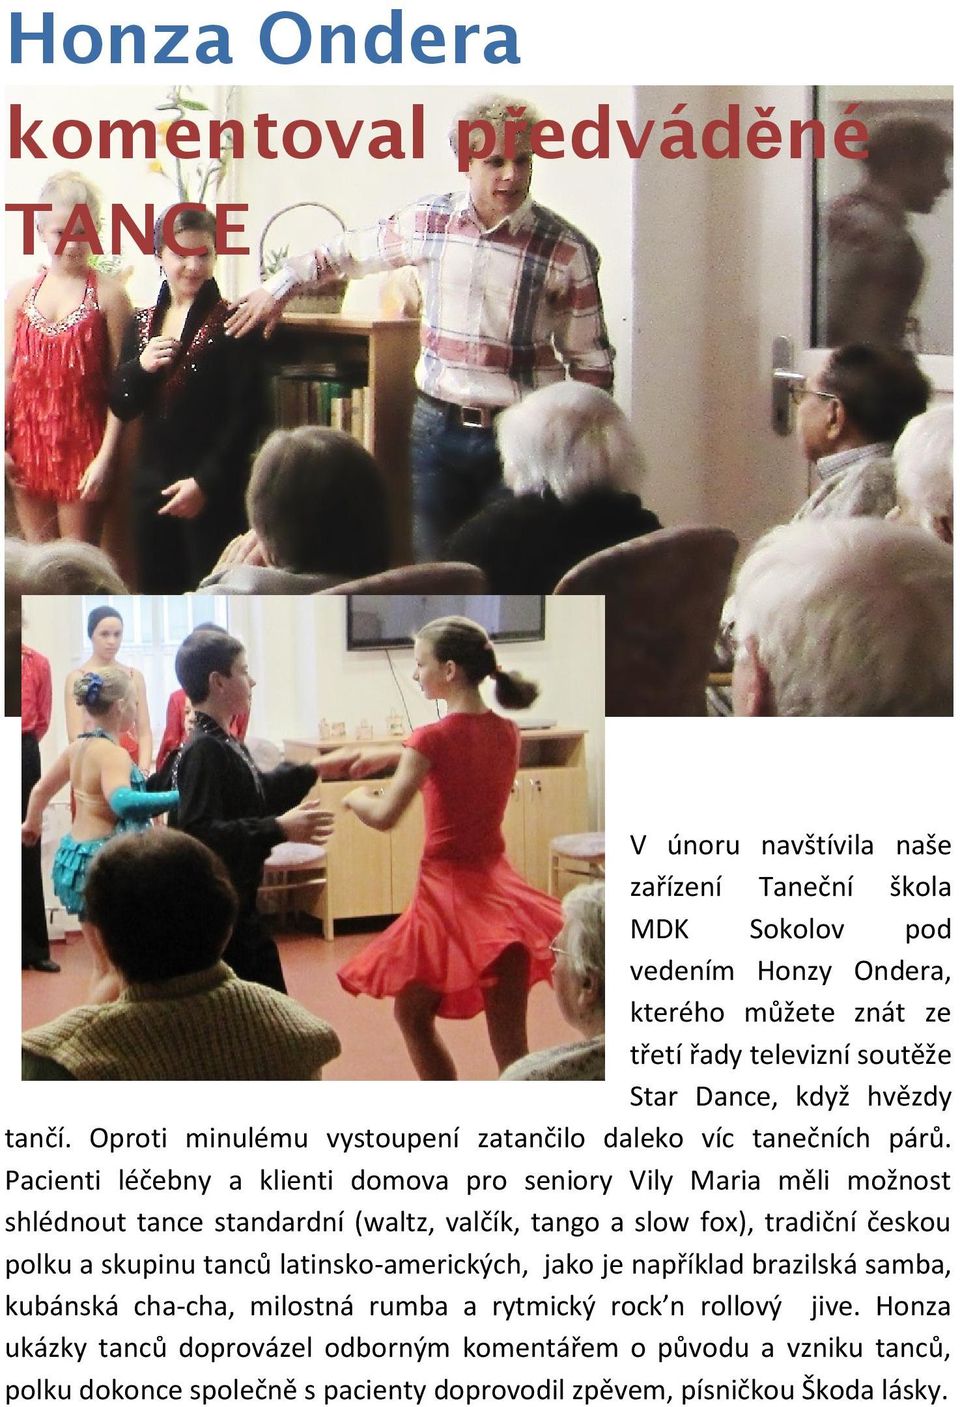 Pacienti léčebny a klienti domova pro seniory Vily Maria měli možnost shlédnout tance standardní (waltz, valčík, tango a slow fox), tradiční českou polku a skupinu tanců